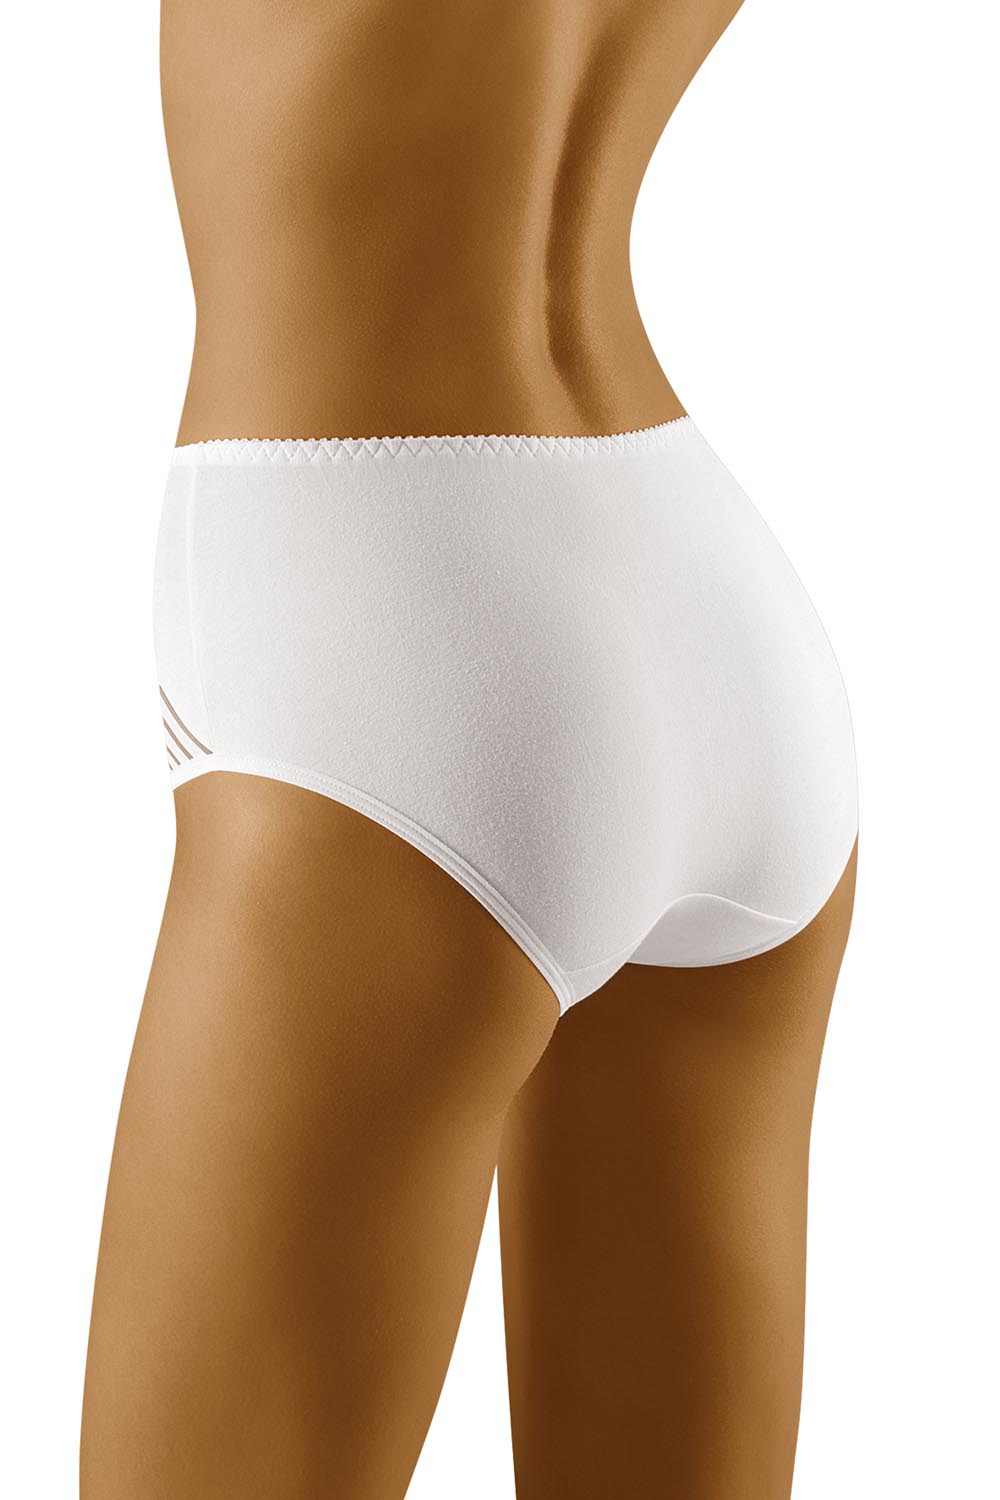 Culotte blanche coton haut de gamme, coupe idéale pour les silhouettes à forte différence hanches/taille.